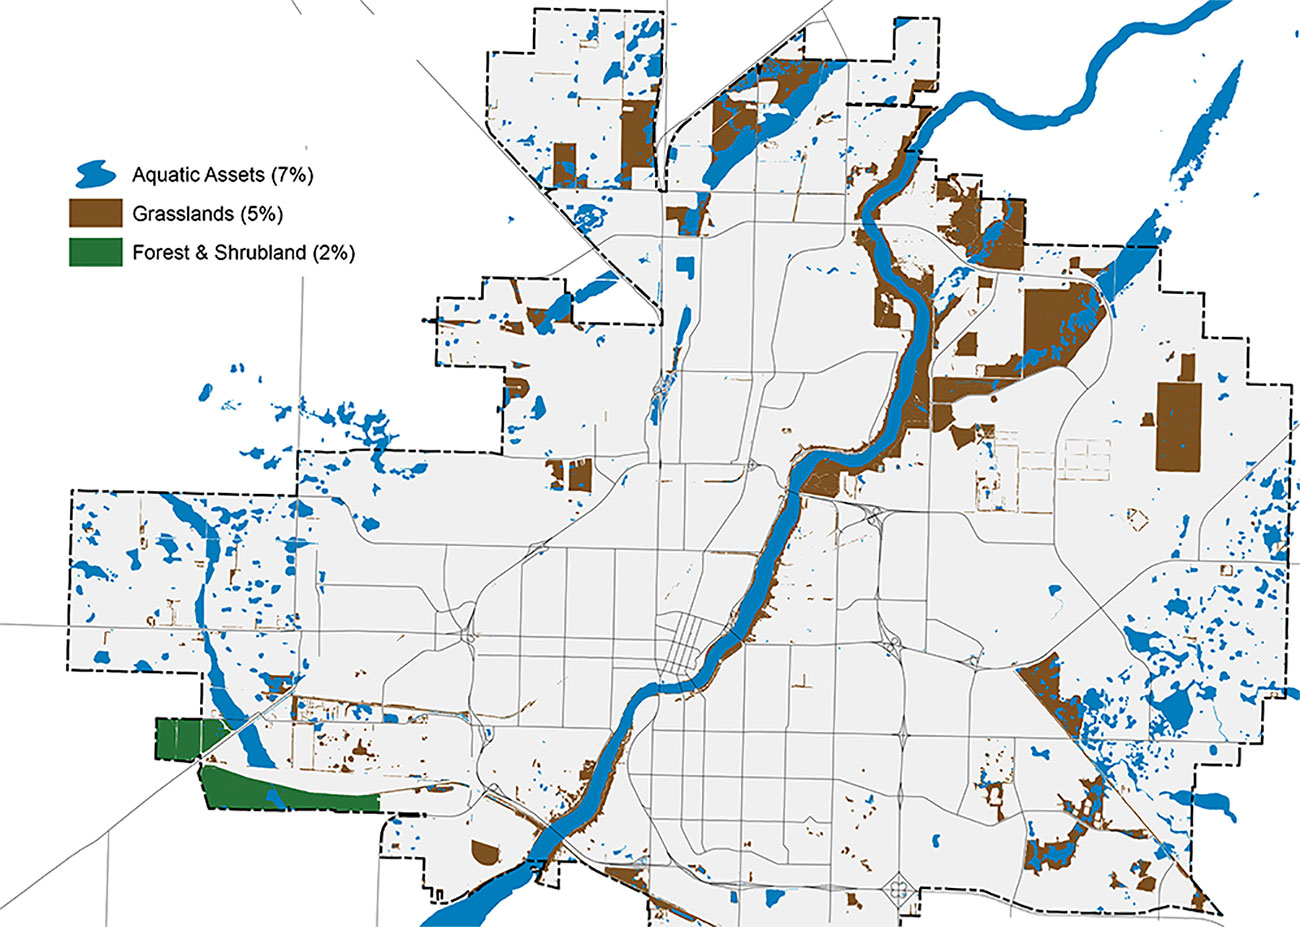 Carte aérienne des limites de Saskatoon, ventilée en quartiers. La carte grise comporte des zones bleues, brunes et vertes, représentant respectivement les actifs aquatiques, les prairies, les forêts et les terres arbustives. Les actifs aquatiques représentent 7 % de la carte, les prairies, 5 %, et les forêts et les terres arbustives, 2 %.